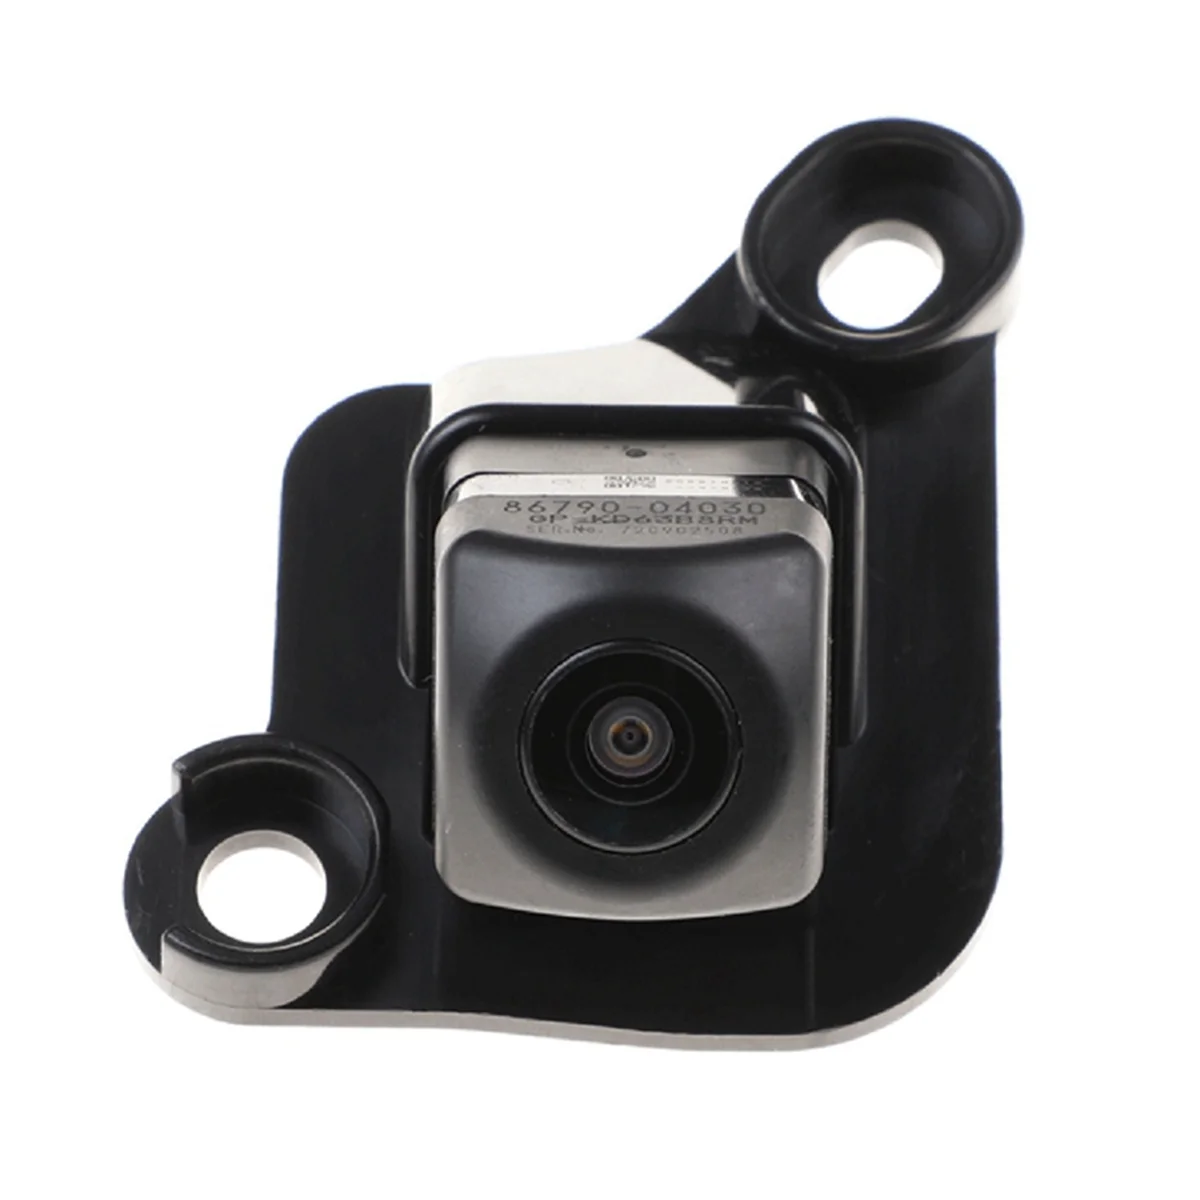 Резервная парковочная камера заднего вида, парковочная камера для Toyota Tacoma, камера заднего вида в сборе 86790-04030 - 4